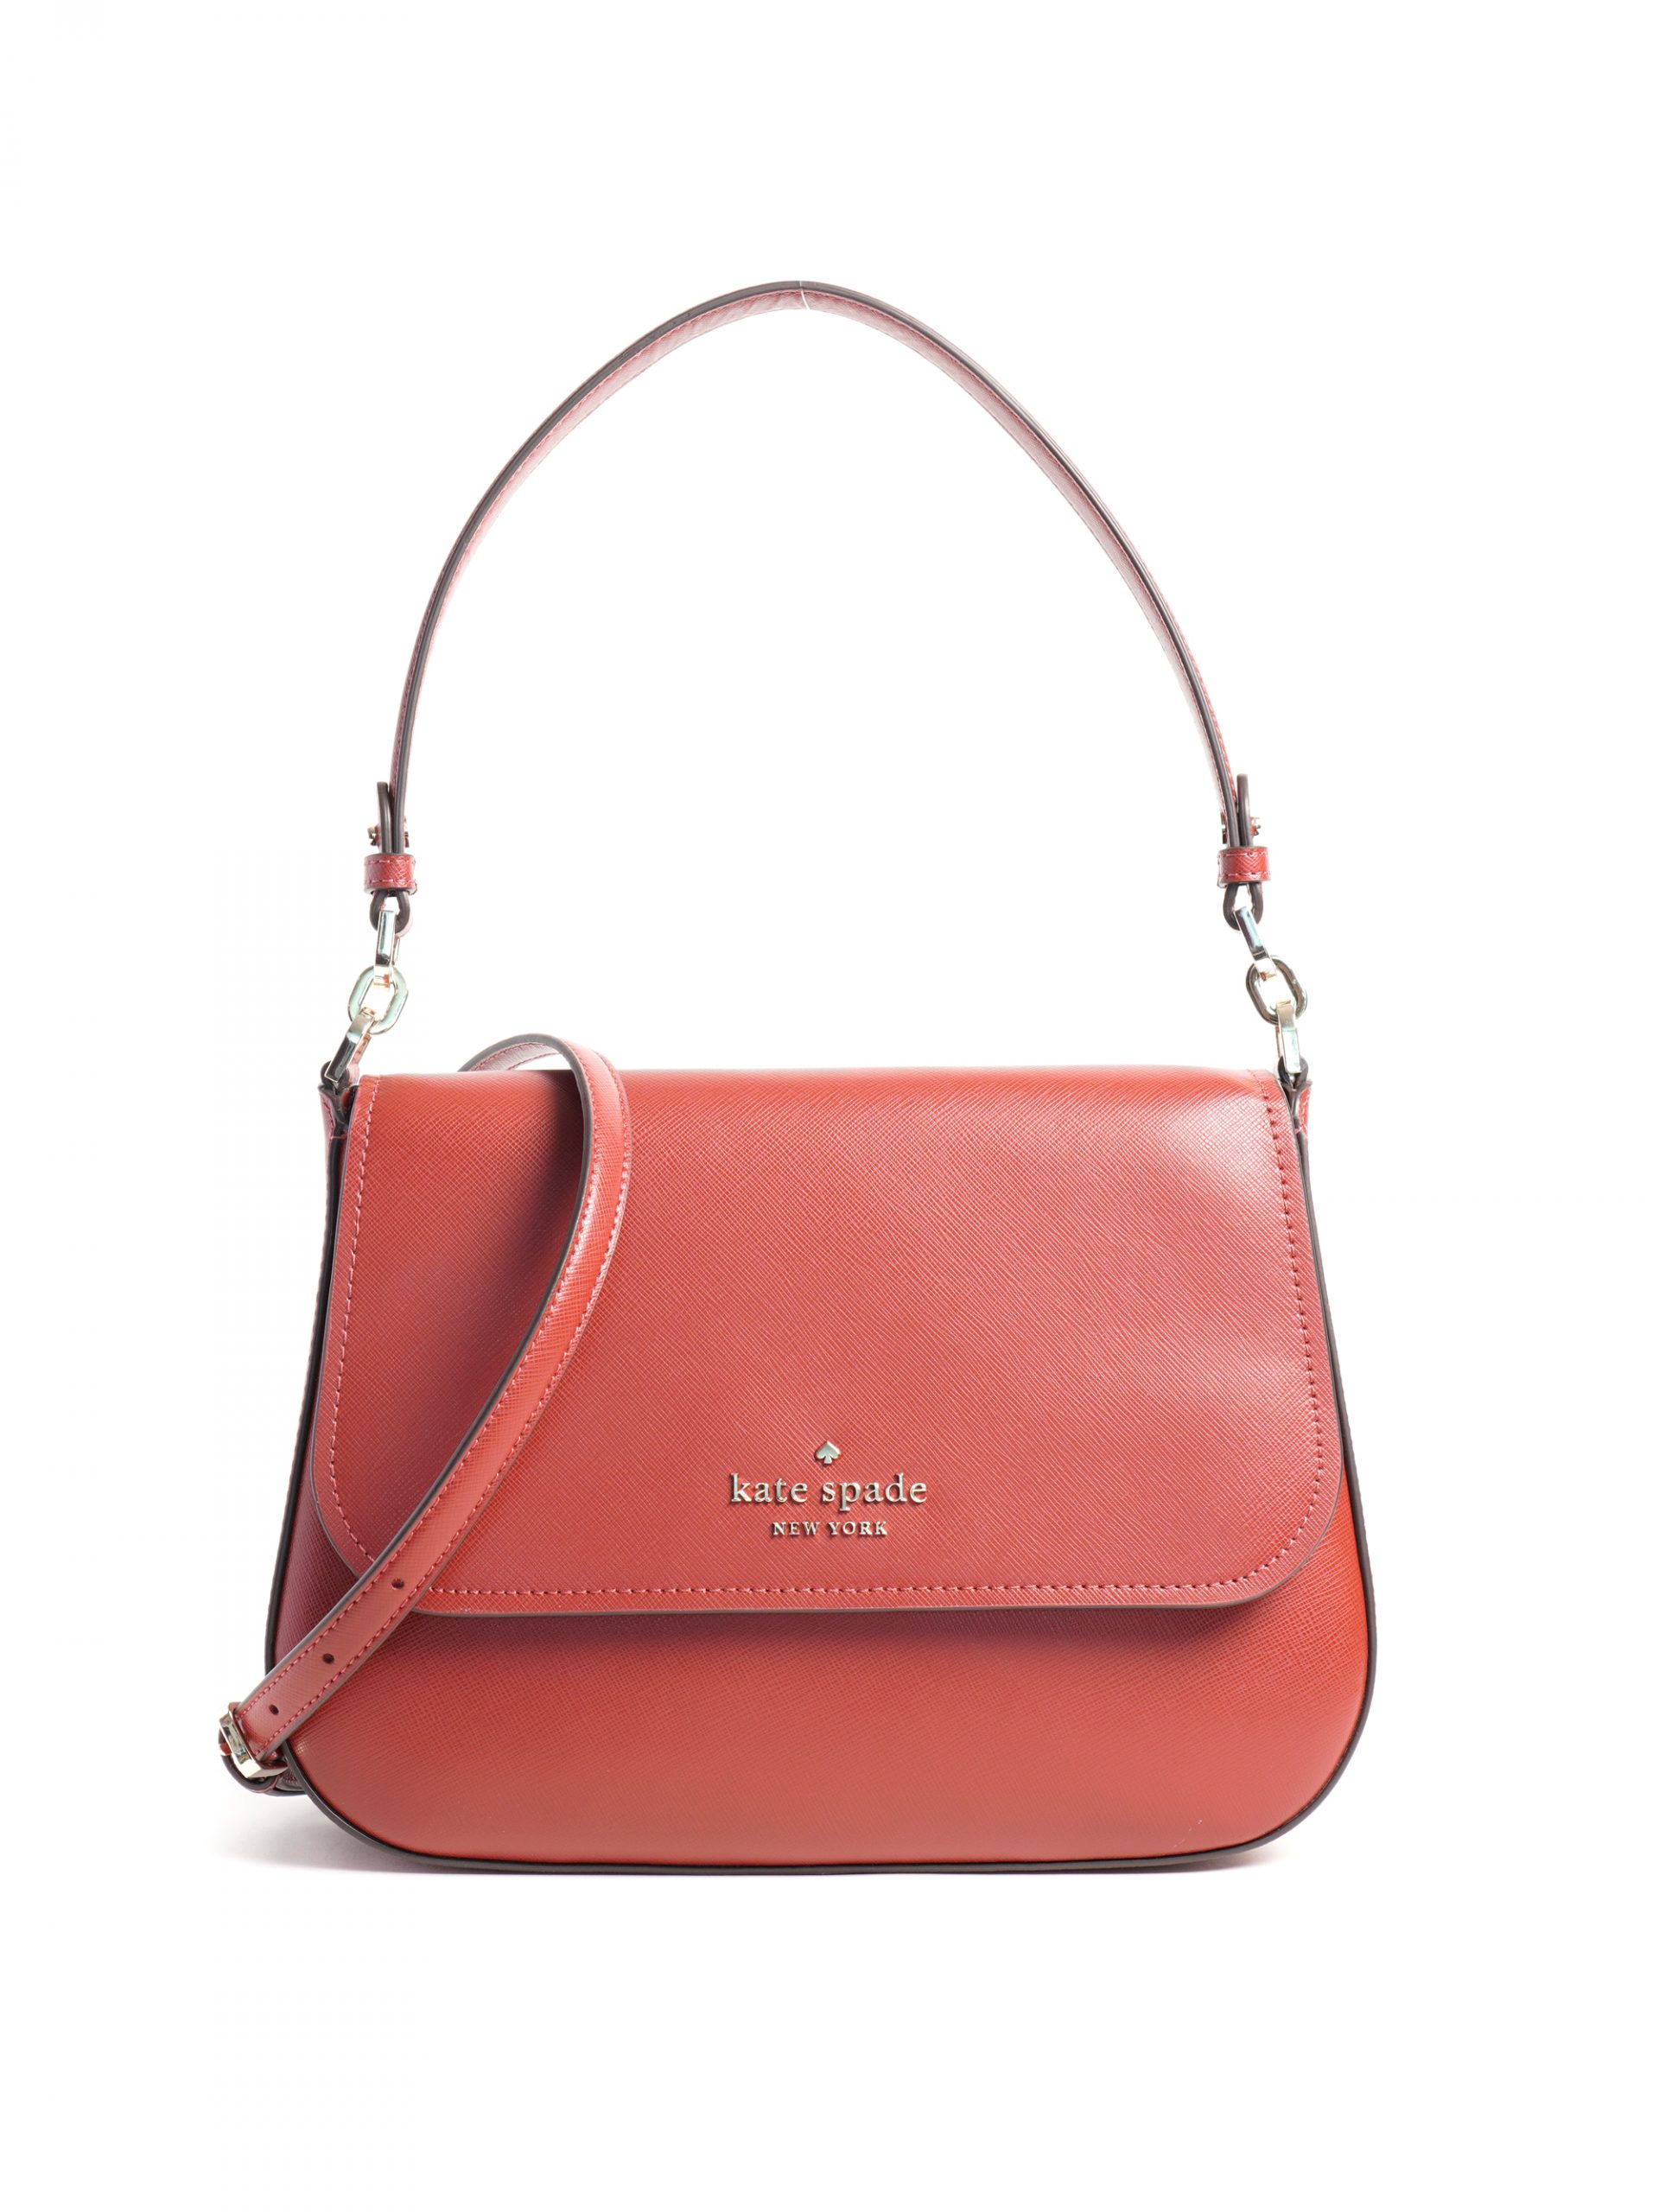 Kate Spade Staci Flap Shoulder Bag Red Currant - Averand